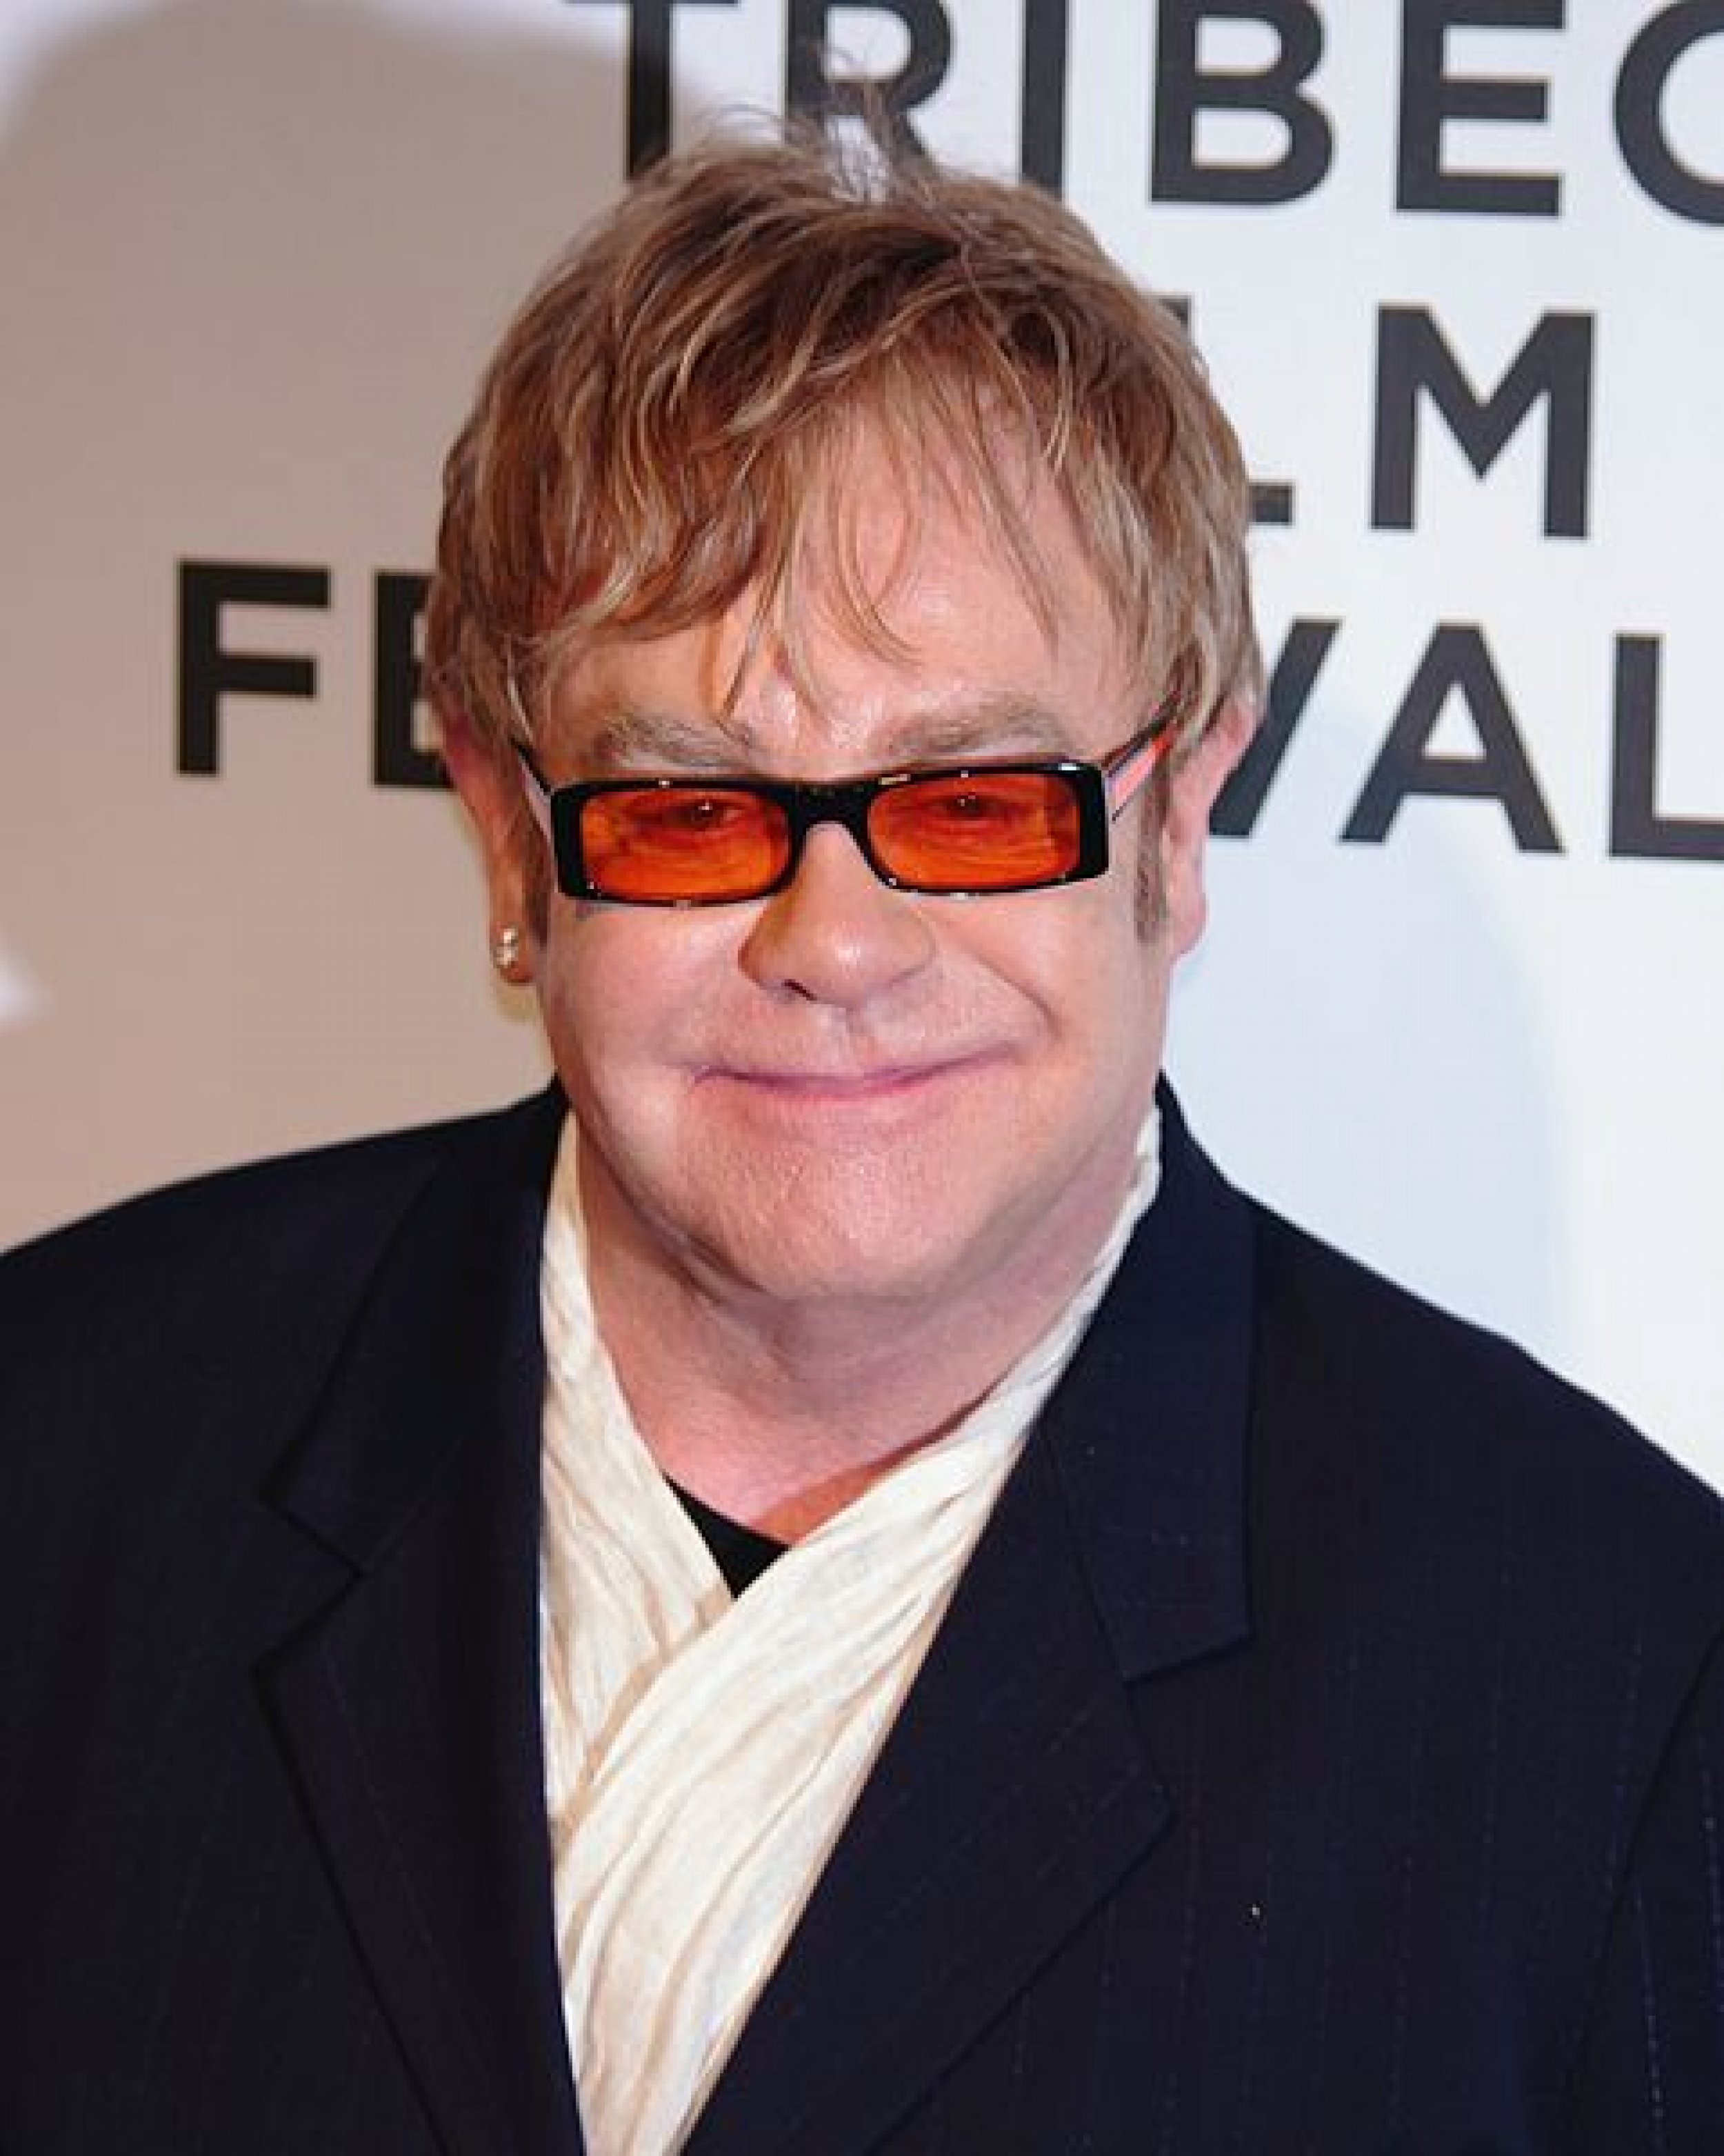 3. Elton John 80 million